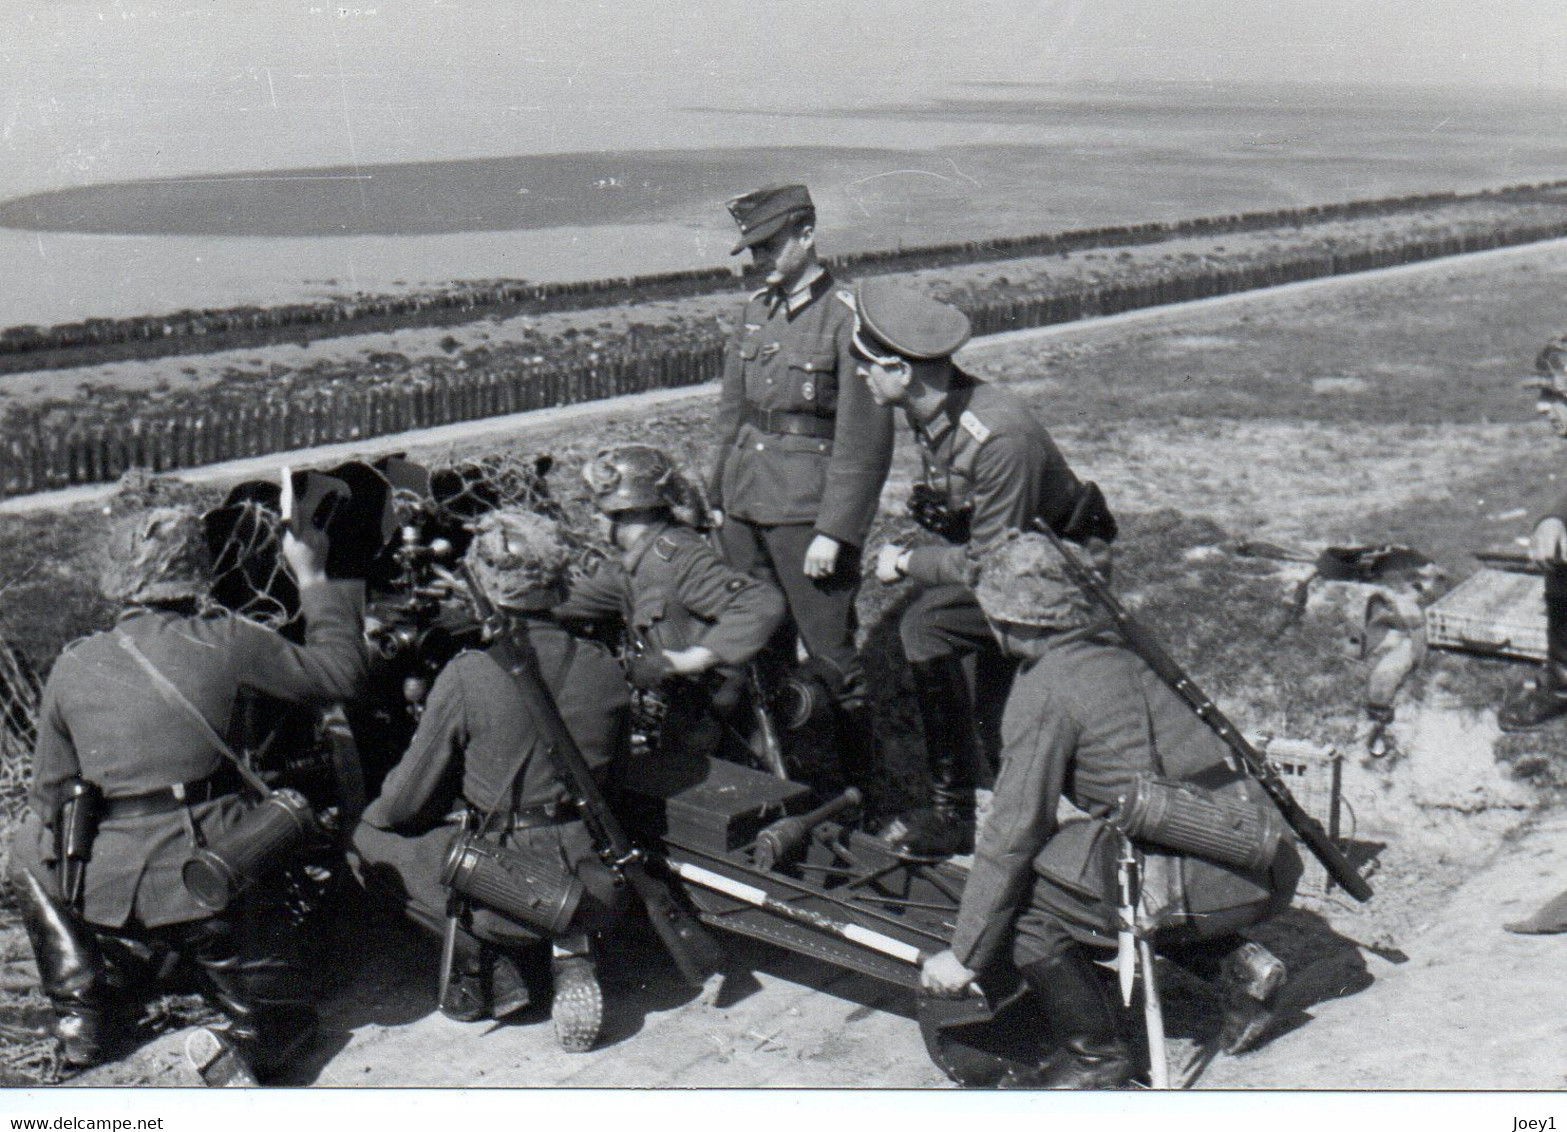 Photos WW2 Mur de l'atlantique,1 lot de 12 photos autour du mur de l'atantique,photos allemande,tirage argentique